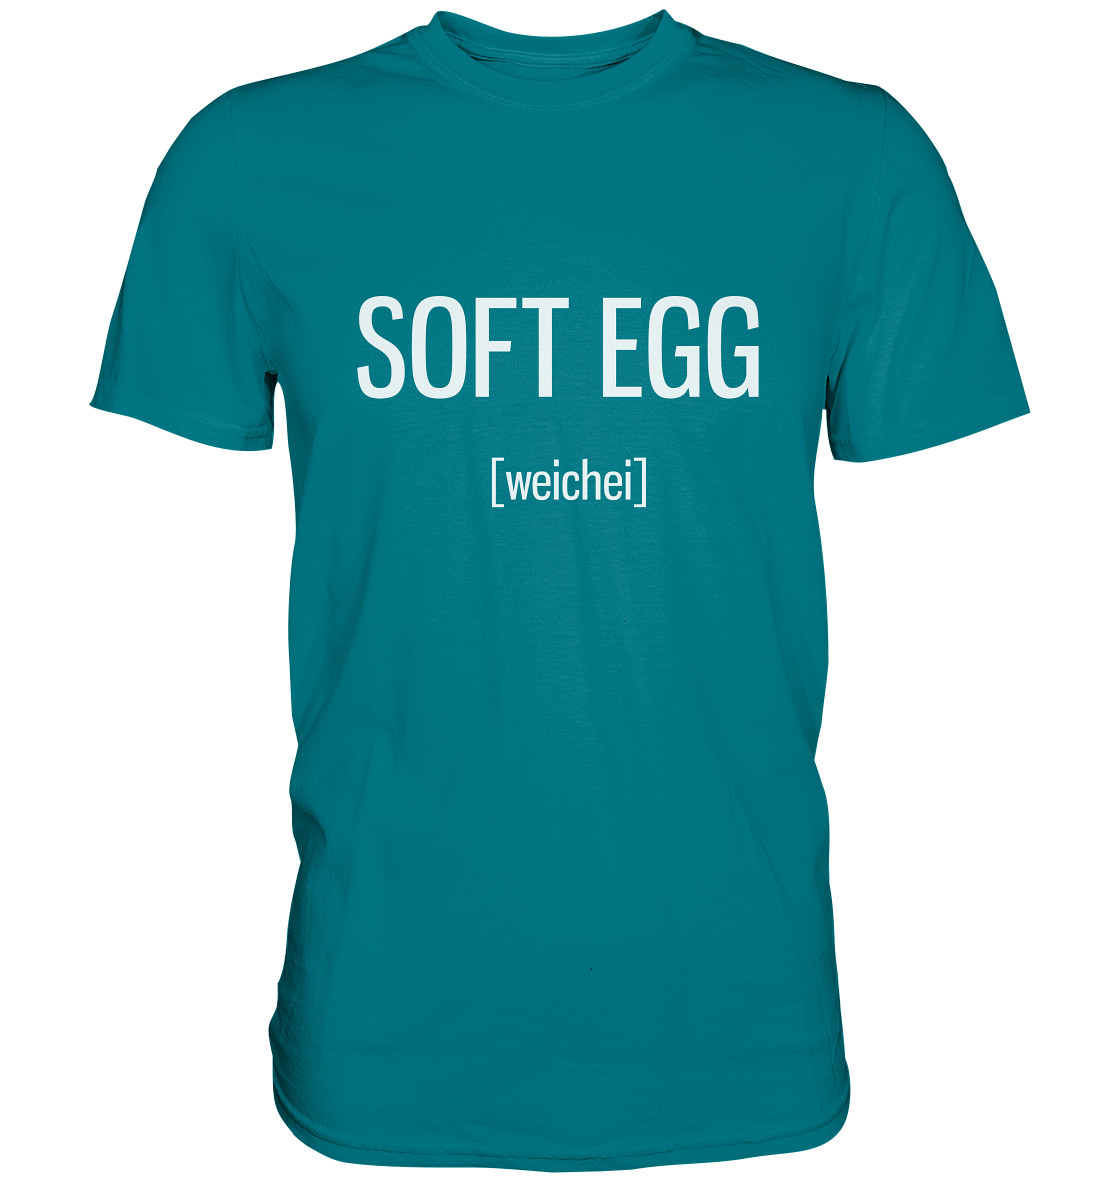 Soft Egg. Weichei. Englisch - Unisex Premium Shirt